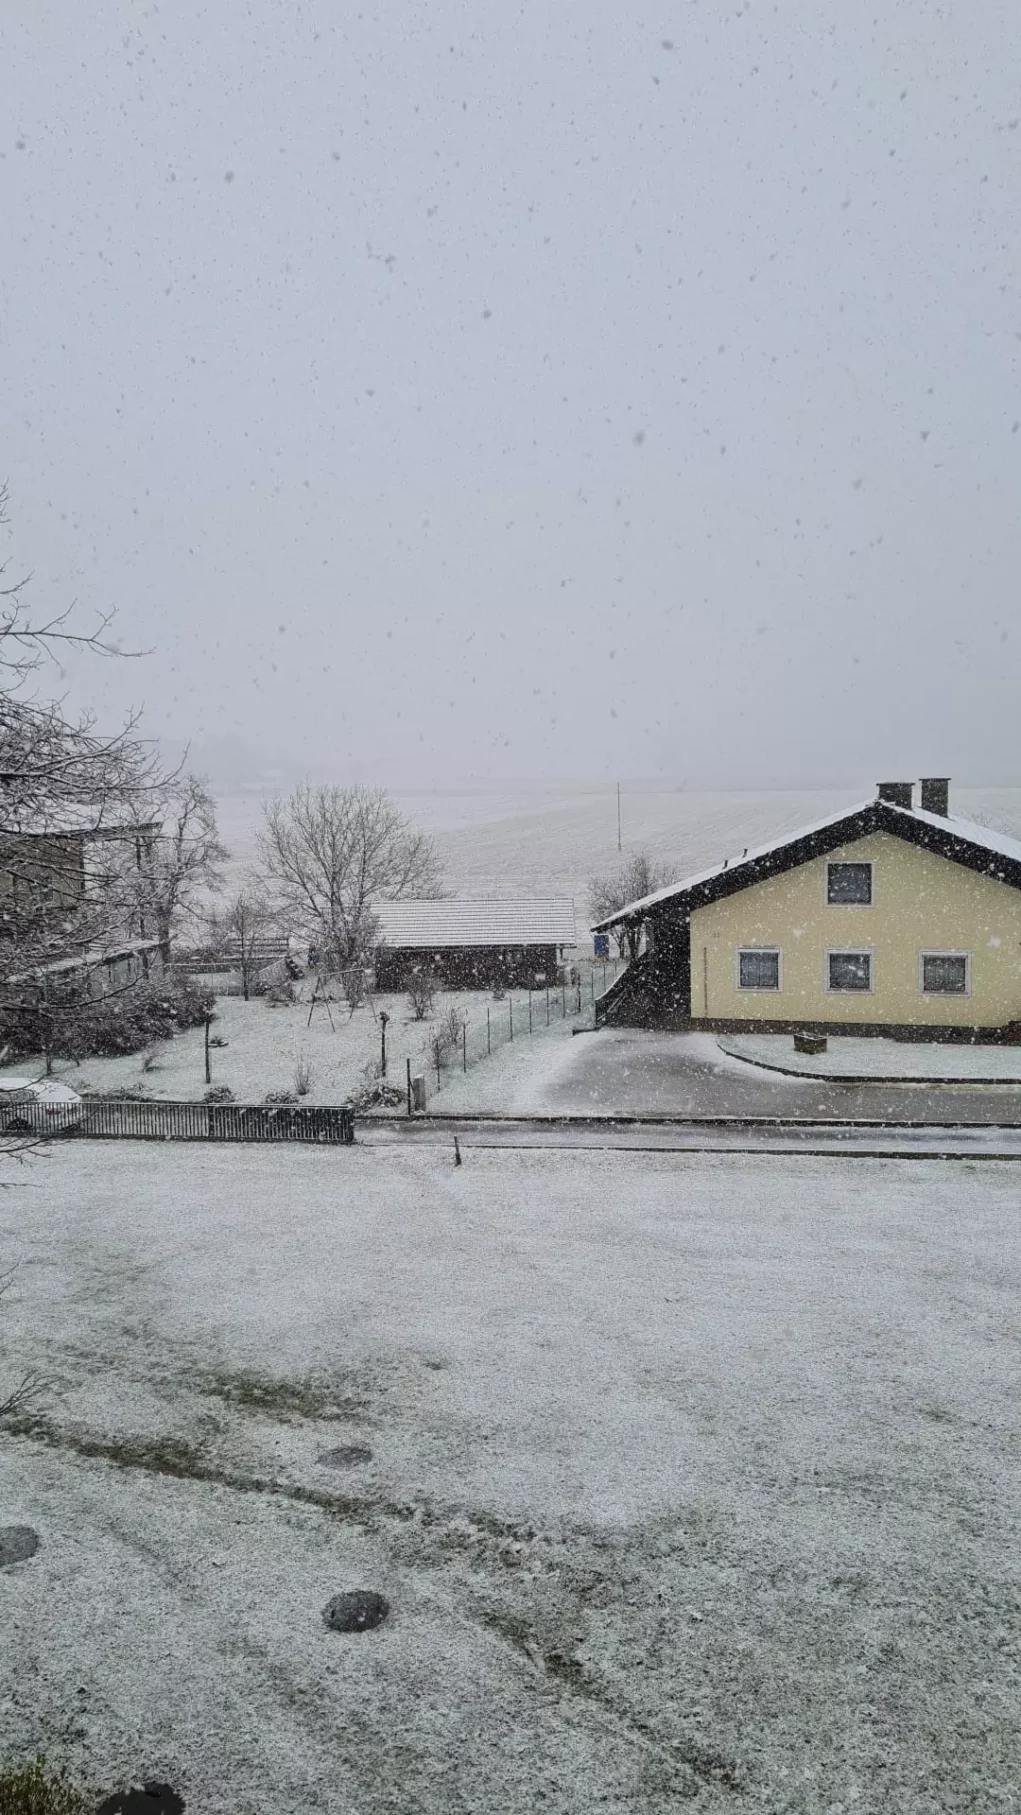 Foto auf 5min.at zeigt Schneefall in St. Margarethen.